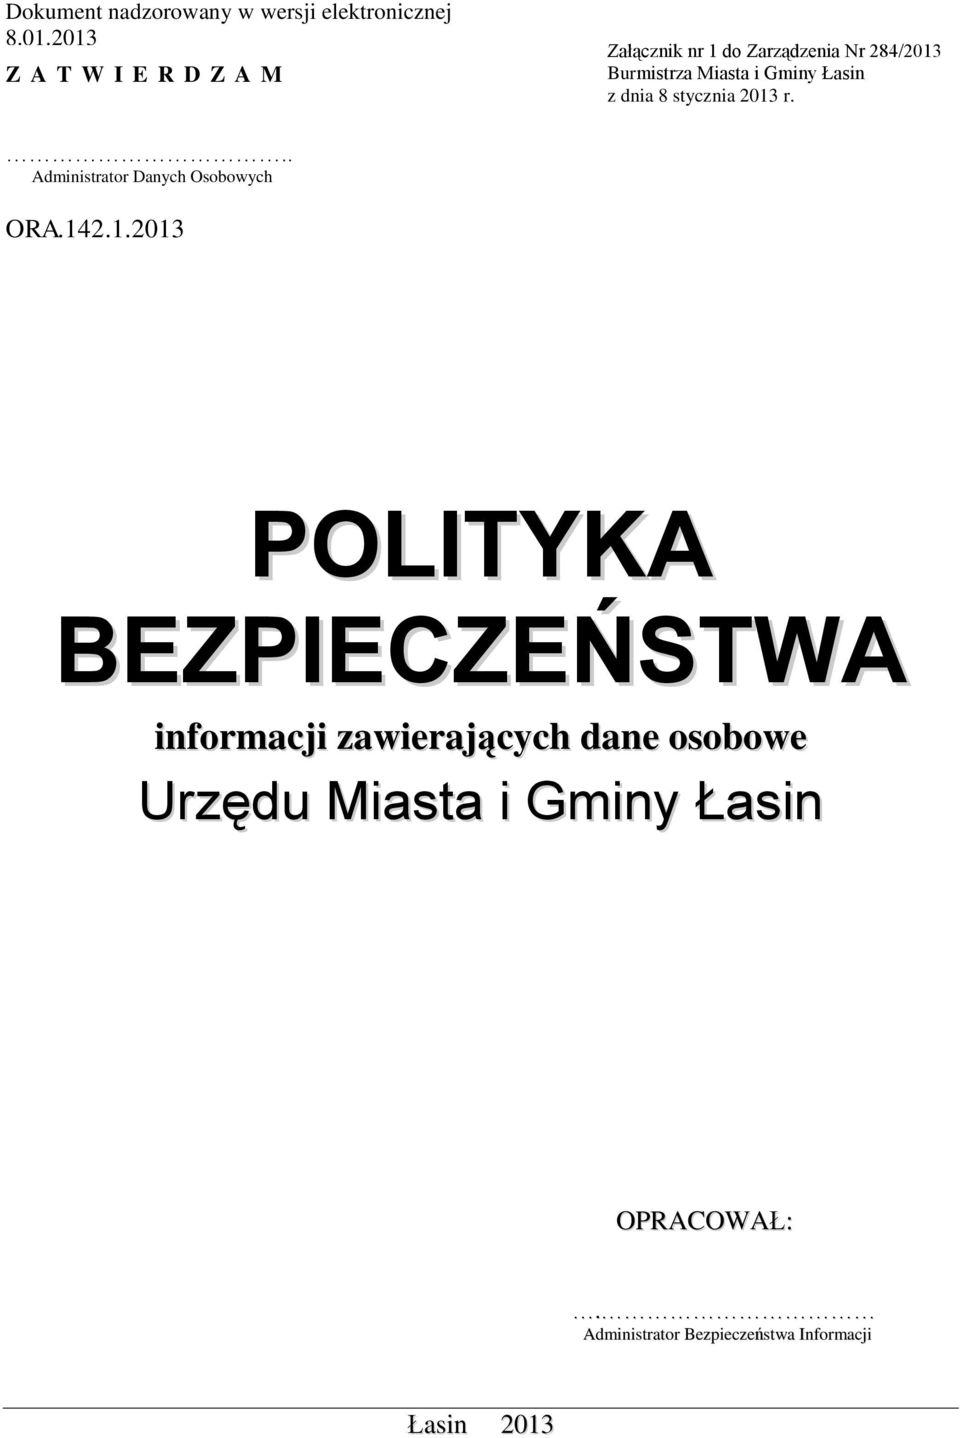 Burmistrza Miasta i Gminy Łasin z dnia 8 stycznia 2013